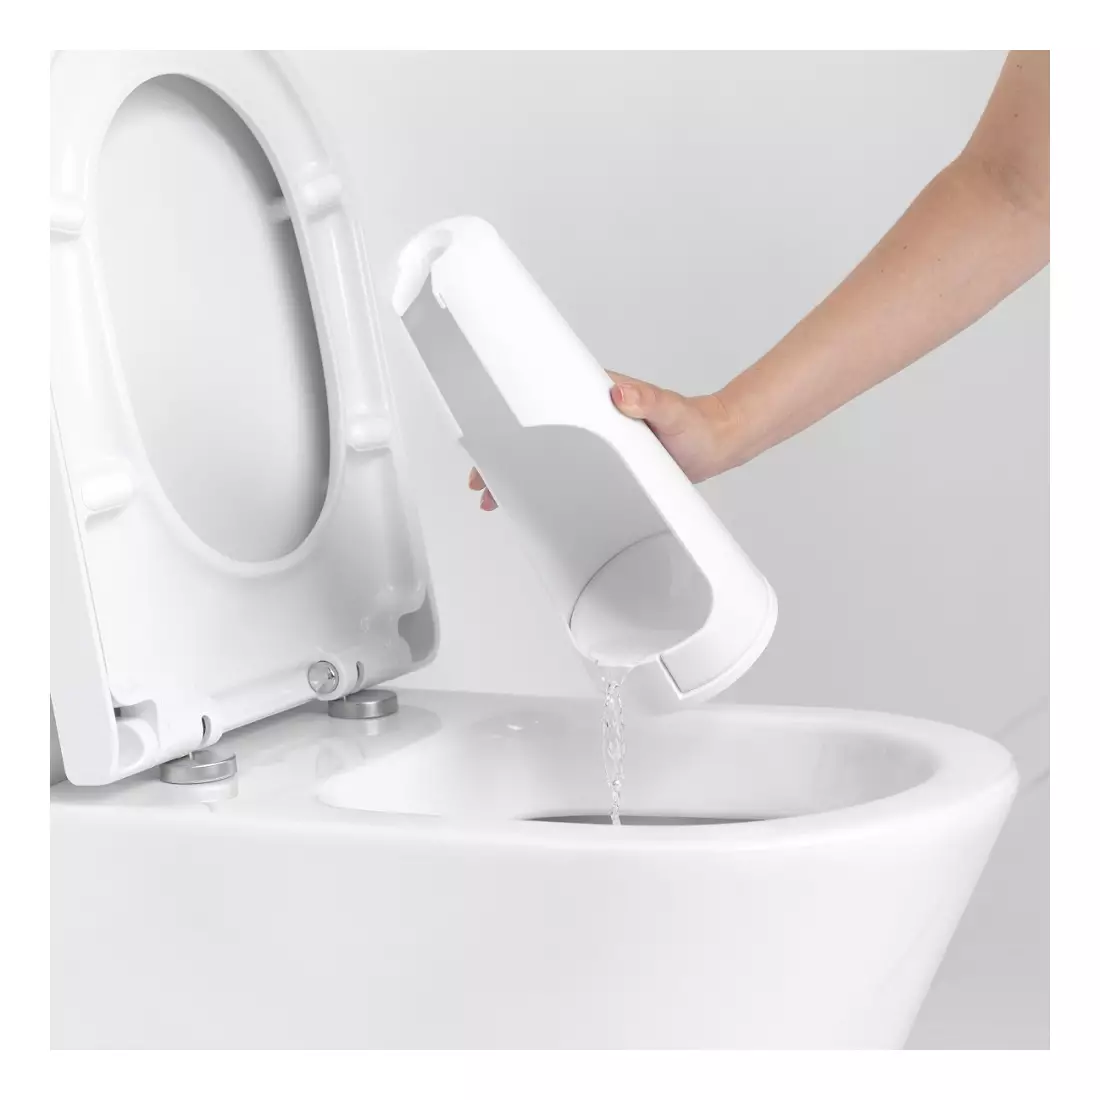 BRABANTIA toilet brush, freestanding, white